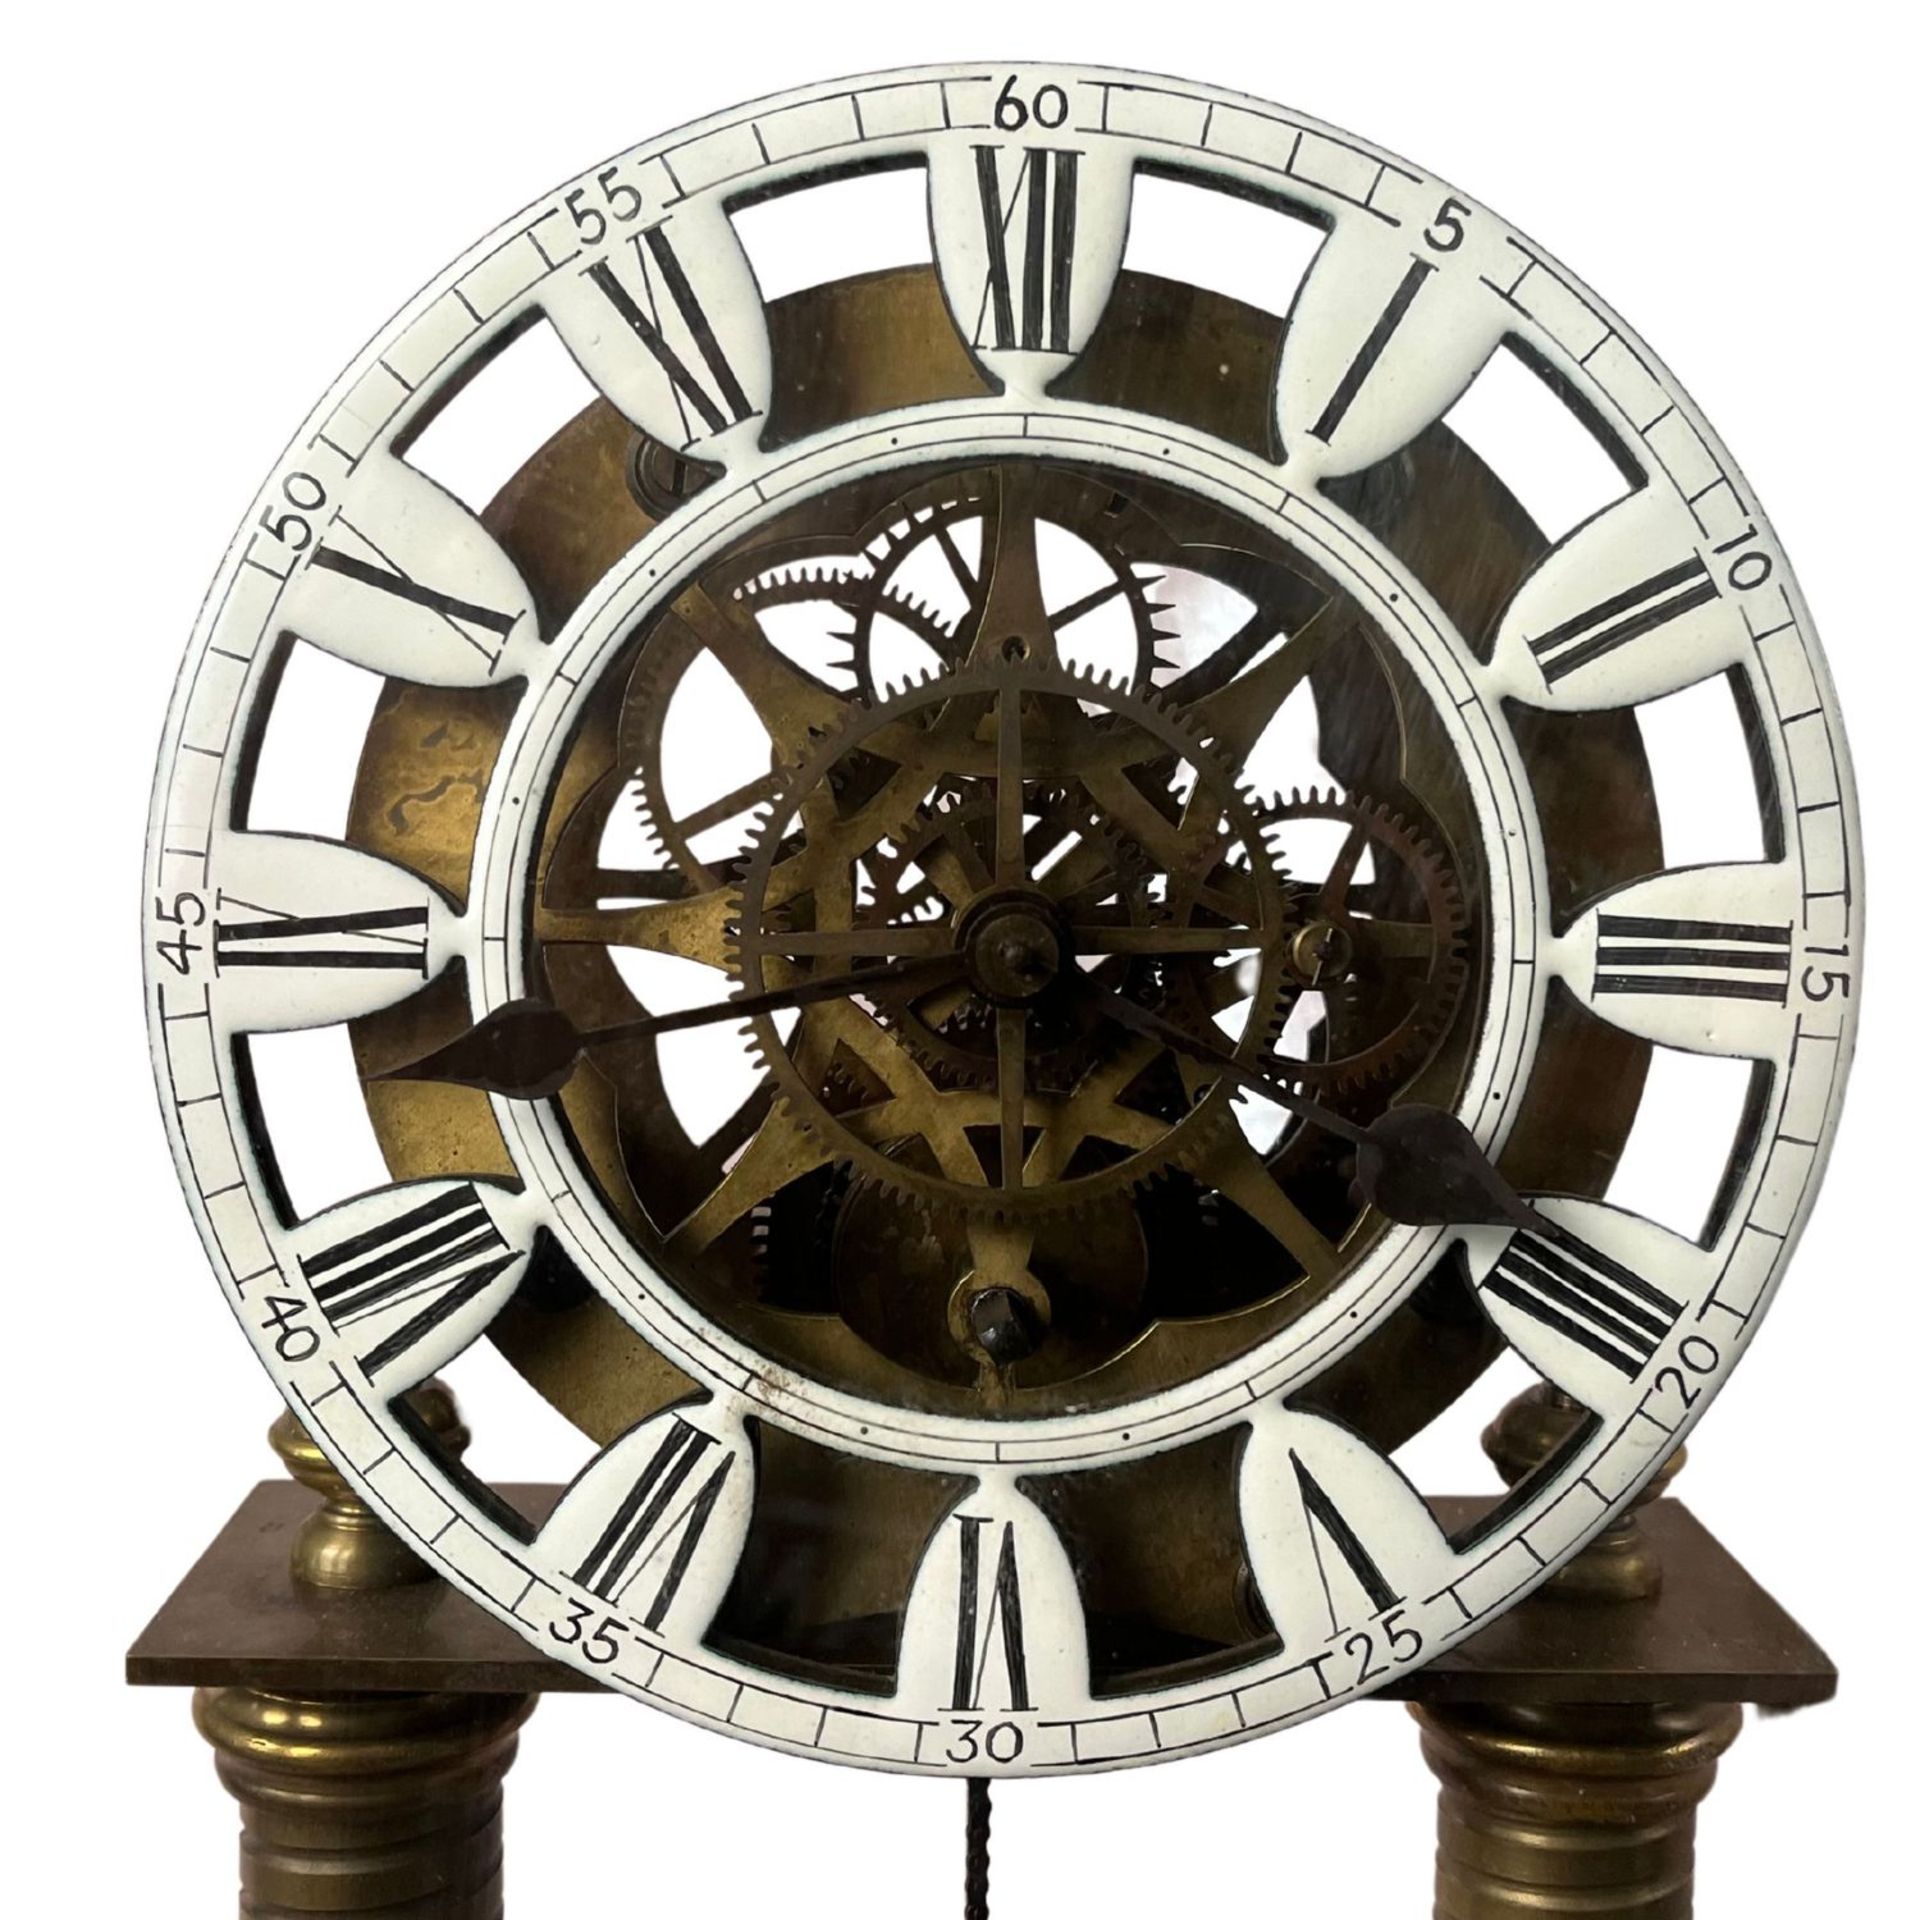 Skeletonized pendulum clock - Image 5 of 5